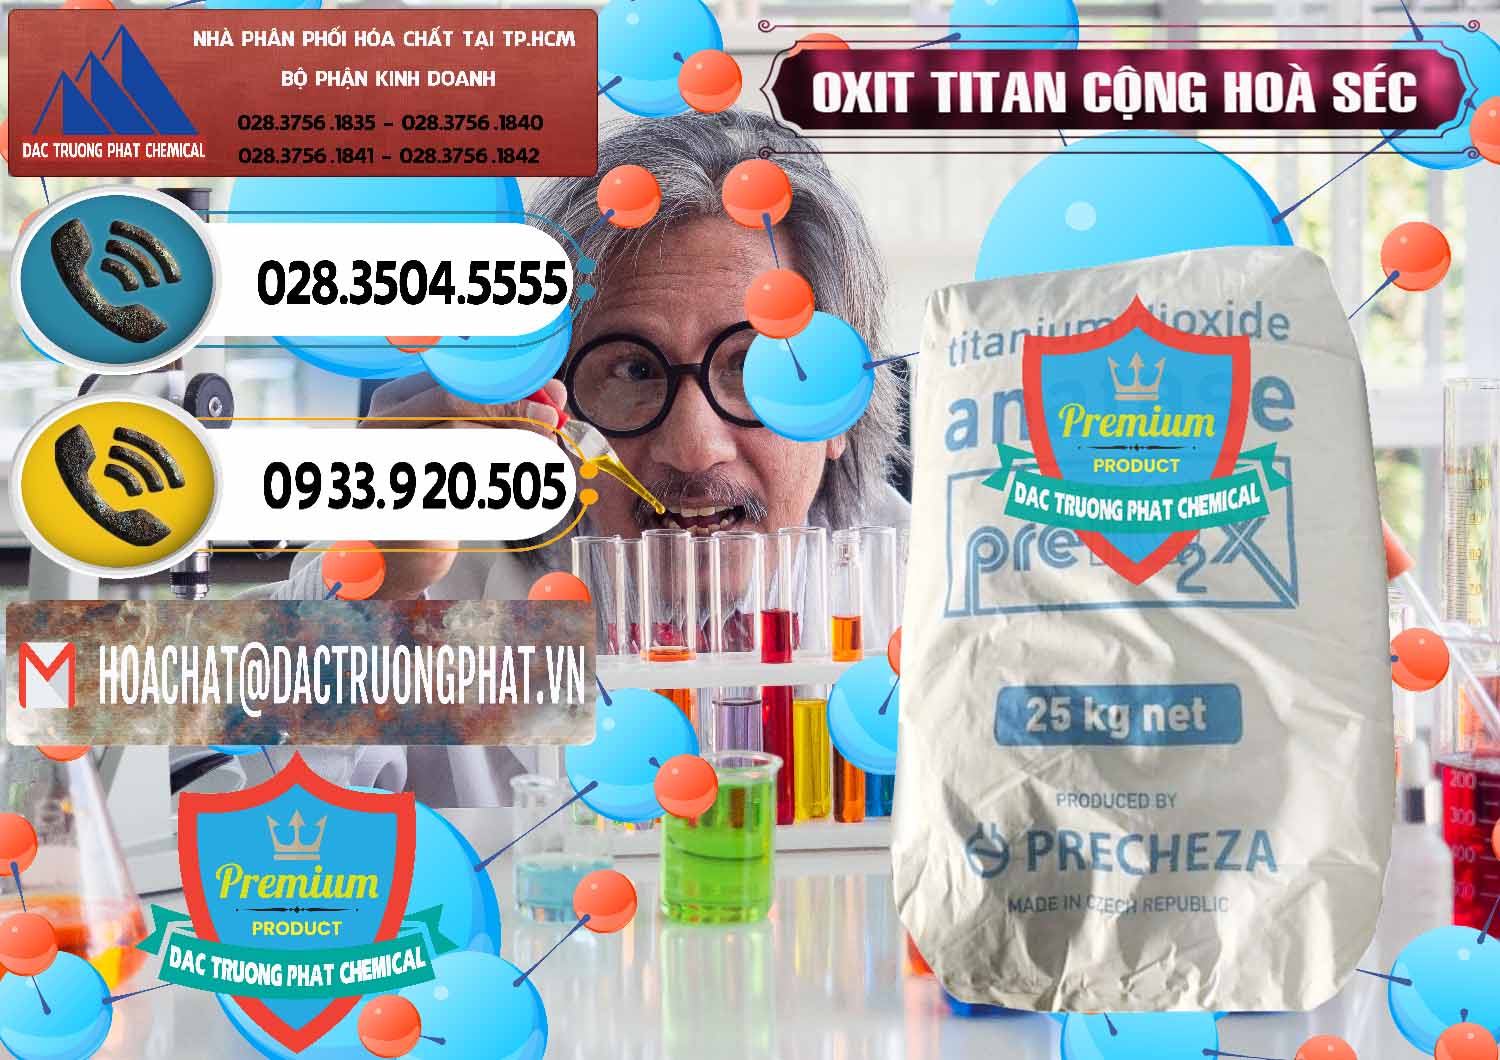 Cty chuyên nhập khẩu _ bán Oxit Titan KA100 – Tio2 Cộng Hòa Séc Czech Republic - 0407 - Cty bán ( phân phối ) hóa chất tại TP.HCM - hoachatdetnhuom.vn